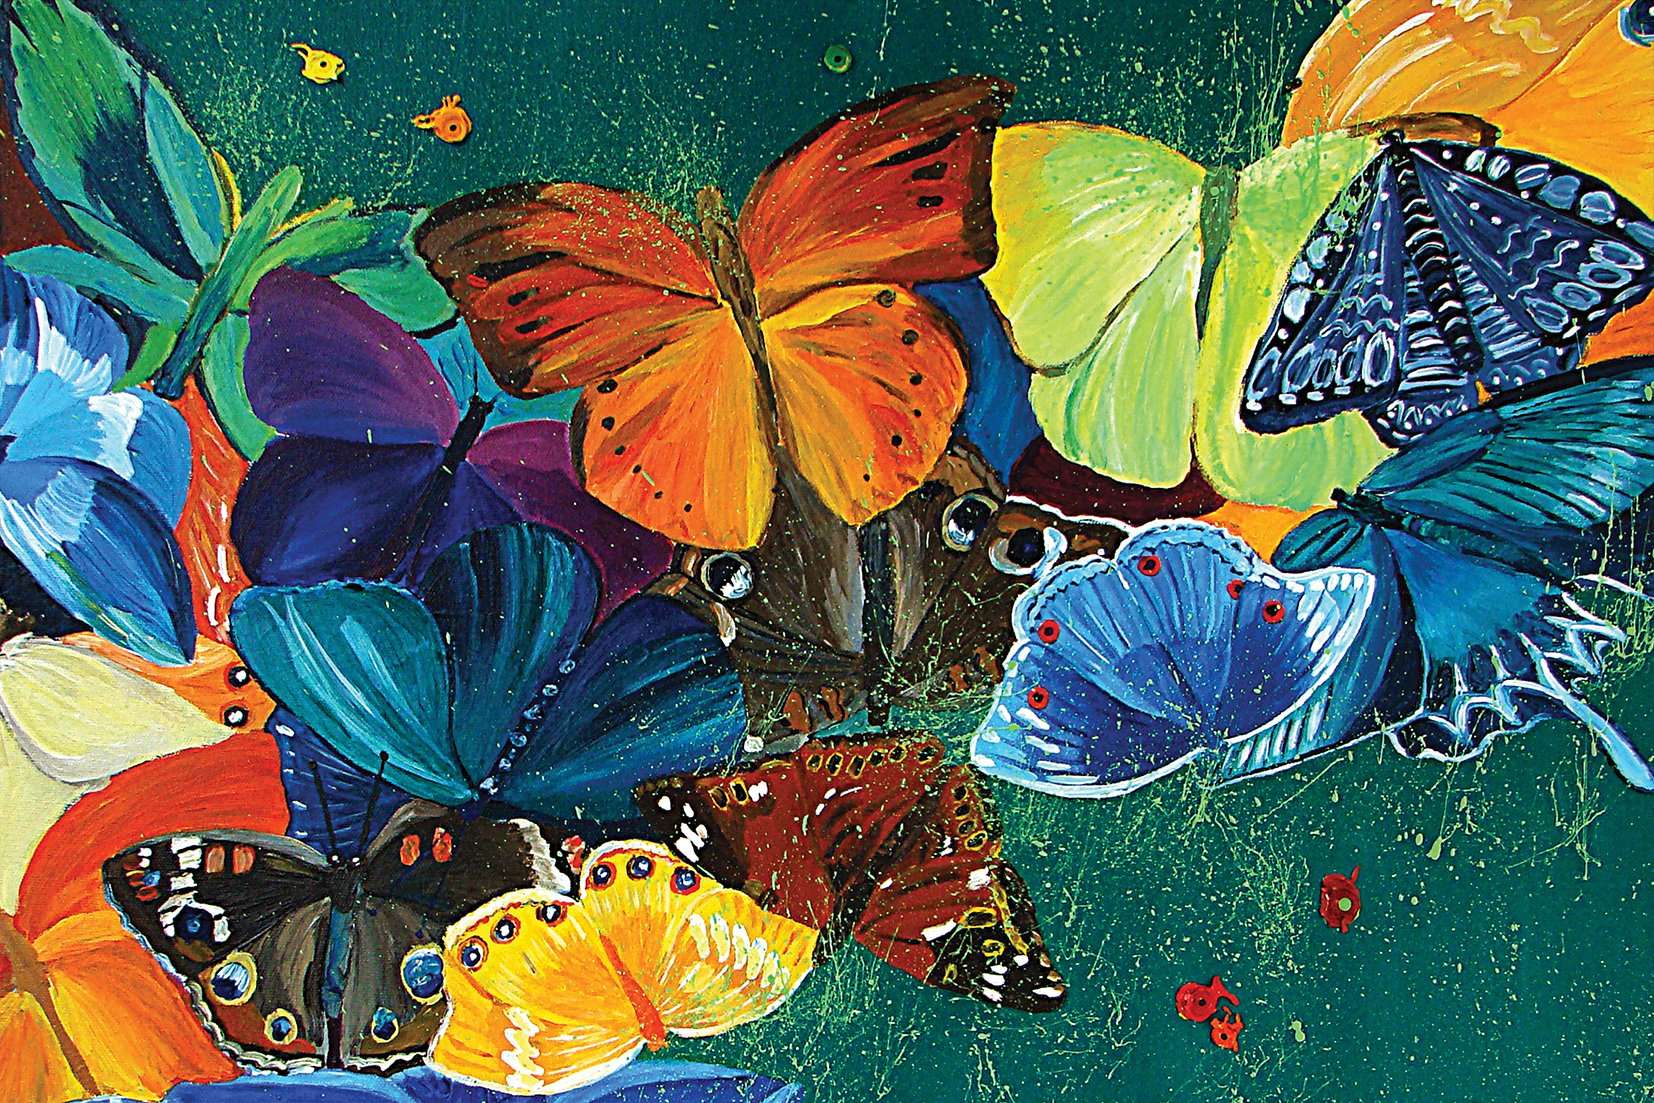 Art zidne slike colorful butterfly - AP046